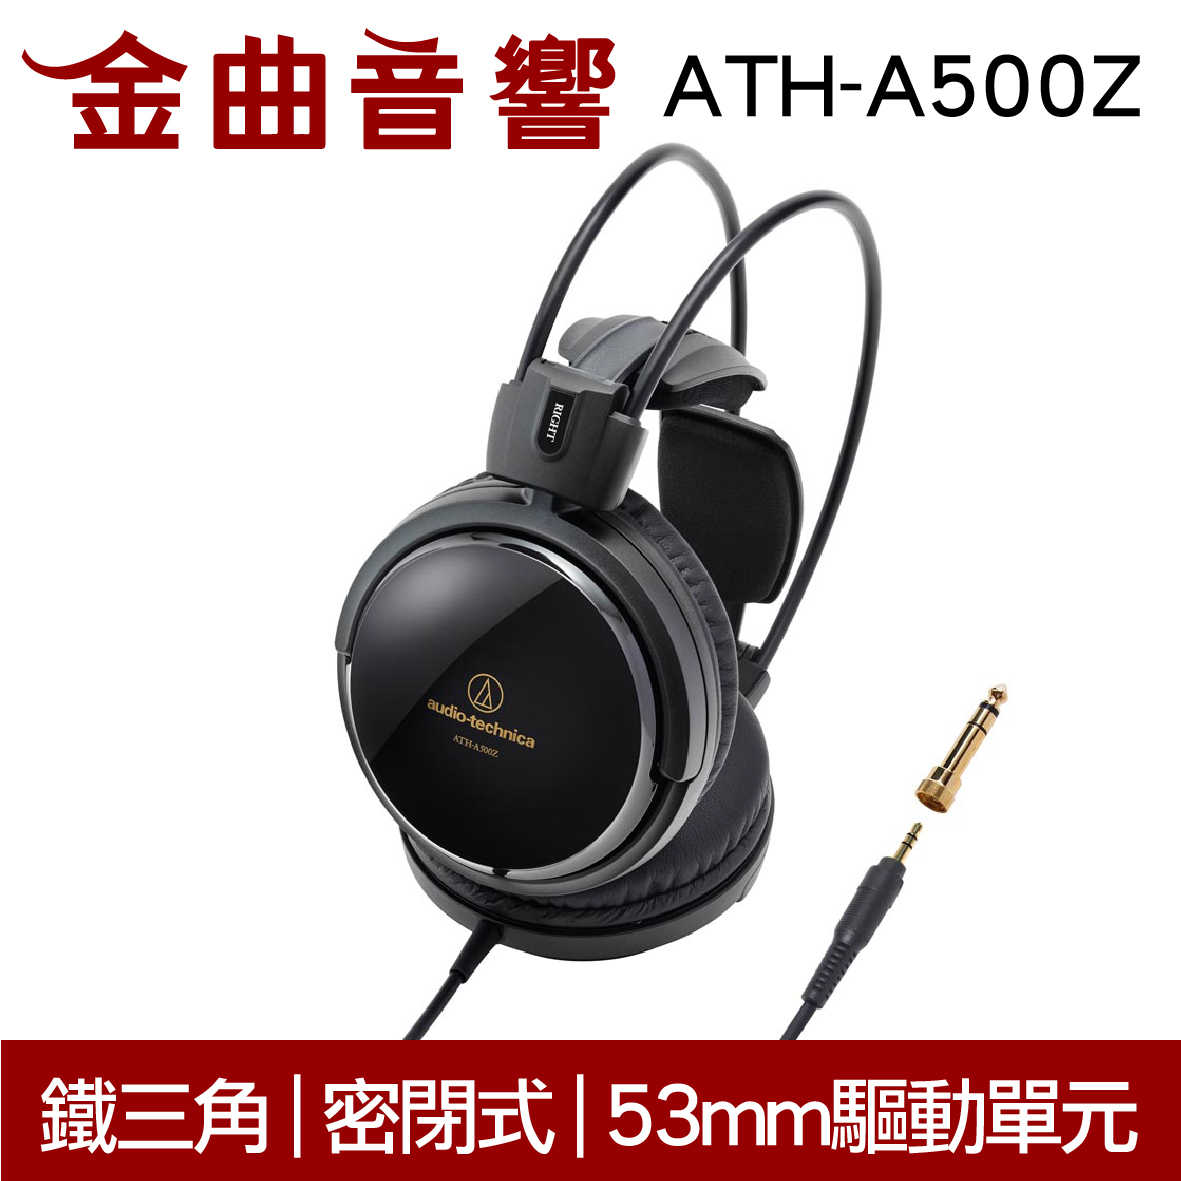 鐵三角 ATH-A500Z 封閉式 耳罩式耳機 | 金曲音響